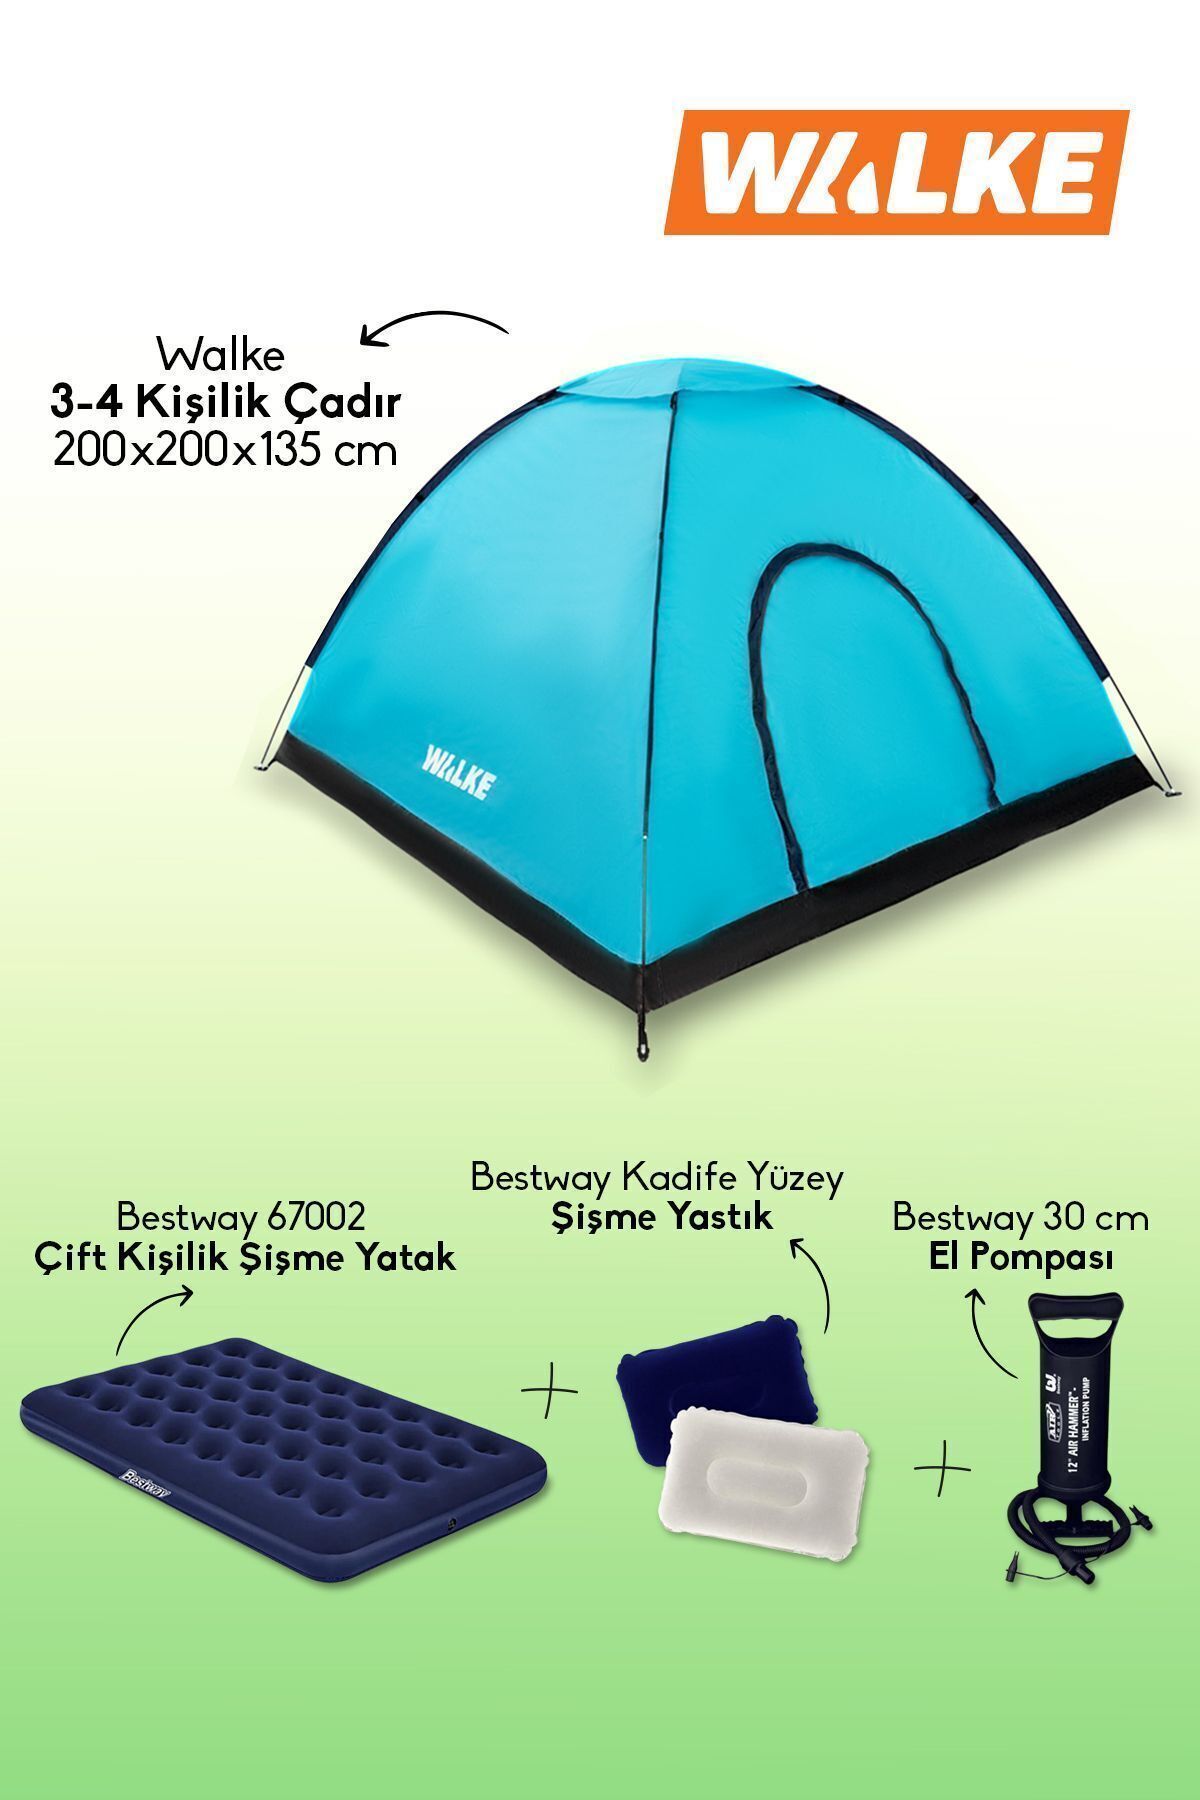 Walke 4 kişilik Kamp Çadırı + Bestway Çift Kişilik Yatak + 2 Yastık + 1 Pompa